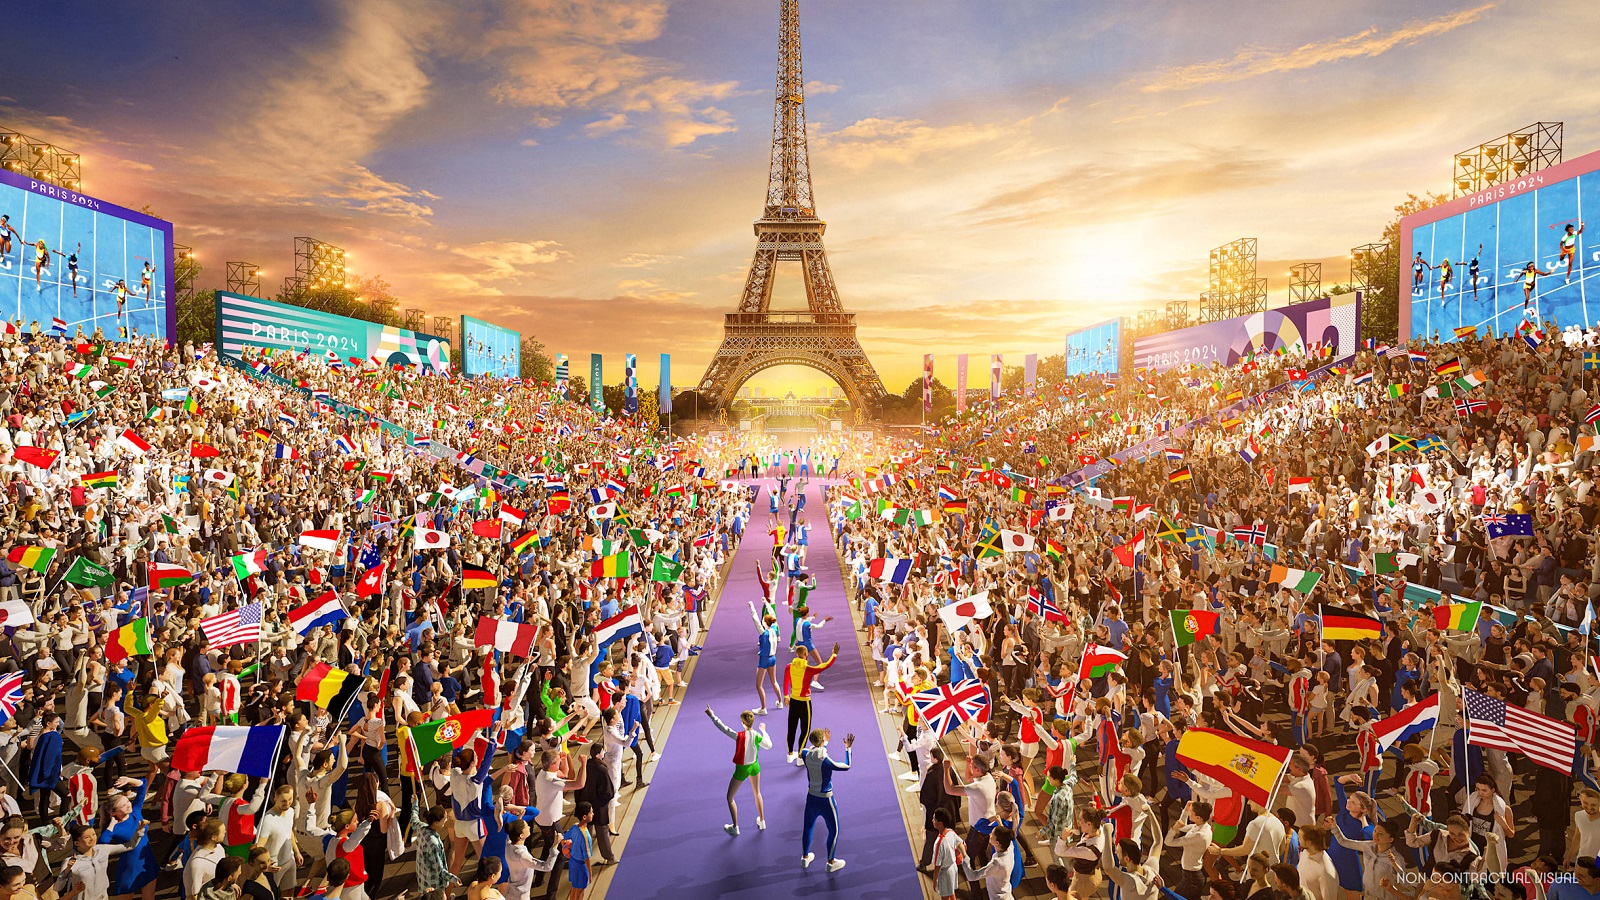 معجزة السكايت بورد التايلاندية: فاريرايا سوكاسيم تتأهل لأولمبياد باريس 2024 في سن الثانية عشرة